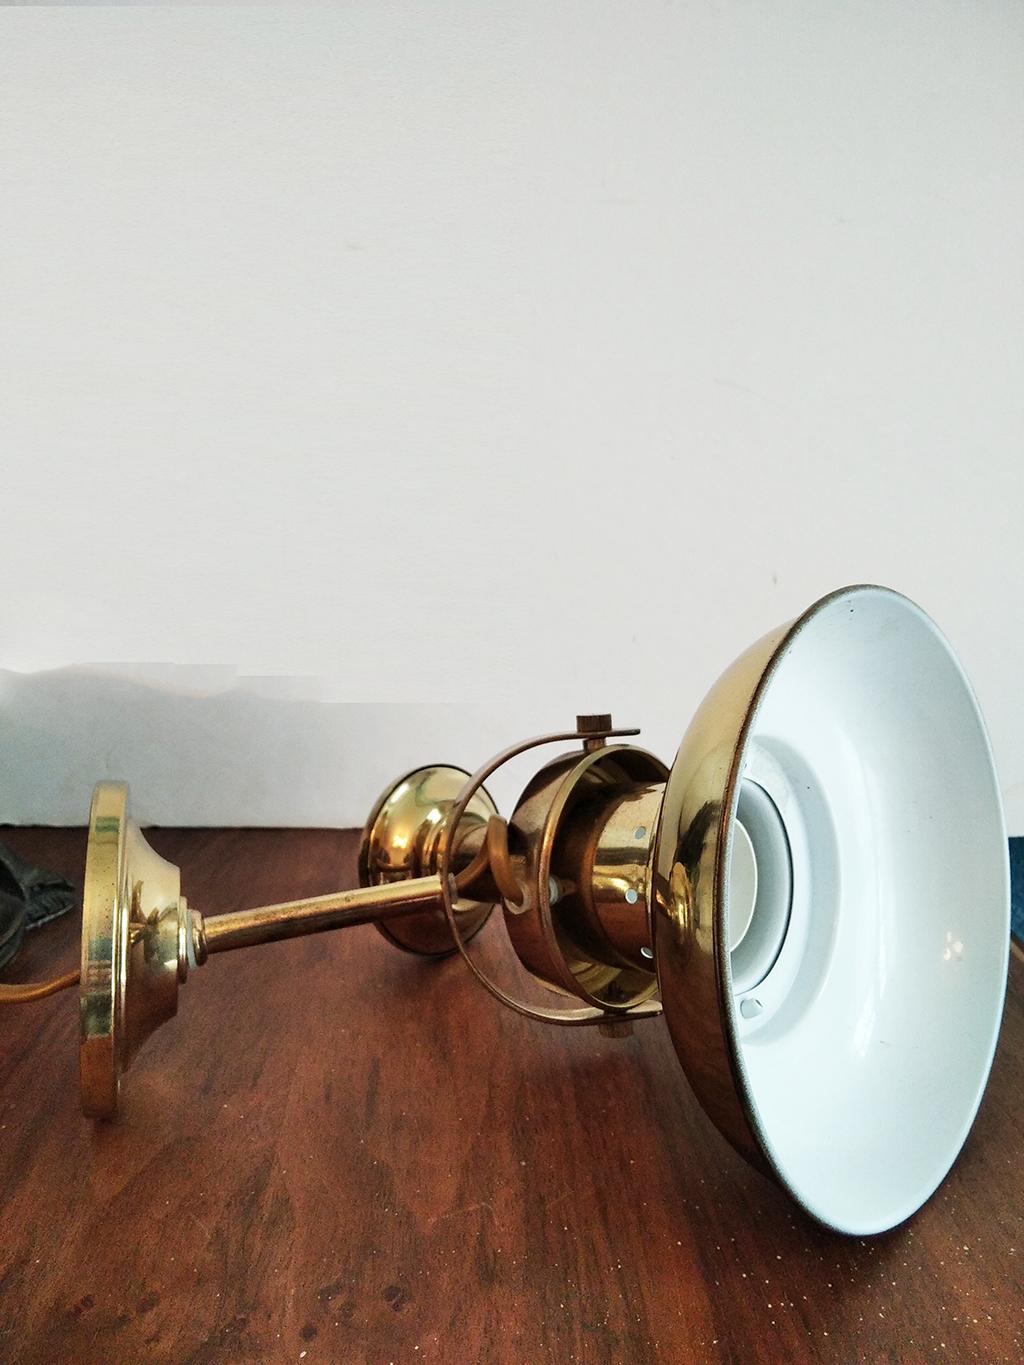 Wandleuchte aus Messing, im Stil einer Seemannslampe
Seemannslampe,

20. Jahrhundert.

Badezimmerarmaturen, marineblau, 







 